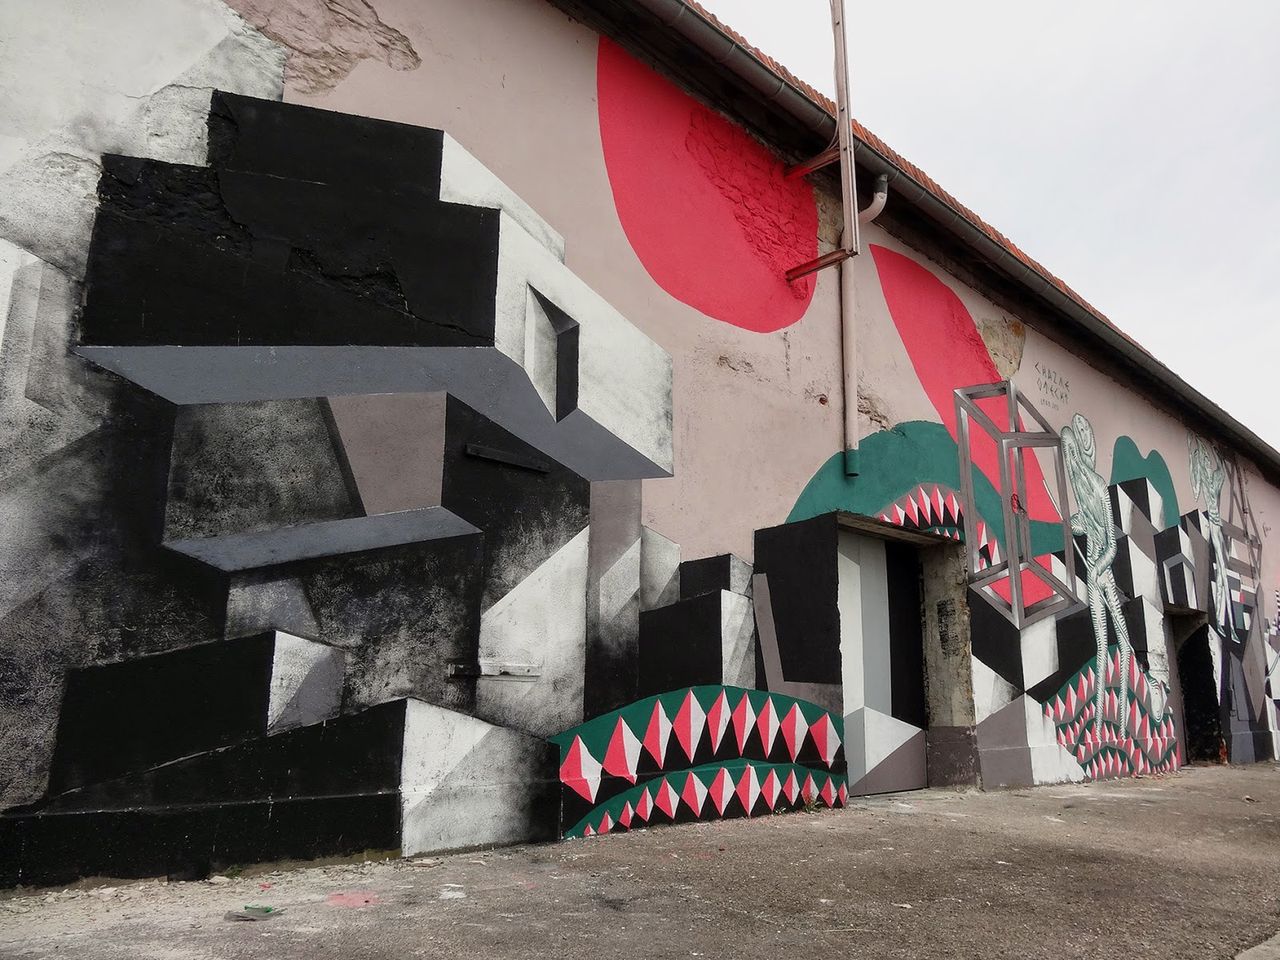 Warszawa ufundowała mural w Lyonie (ZDJĘCIA)